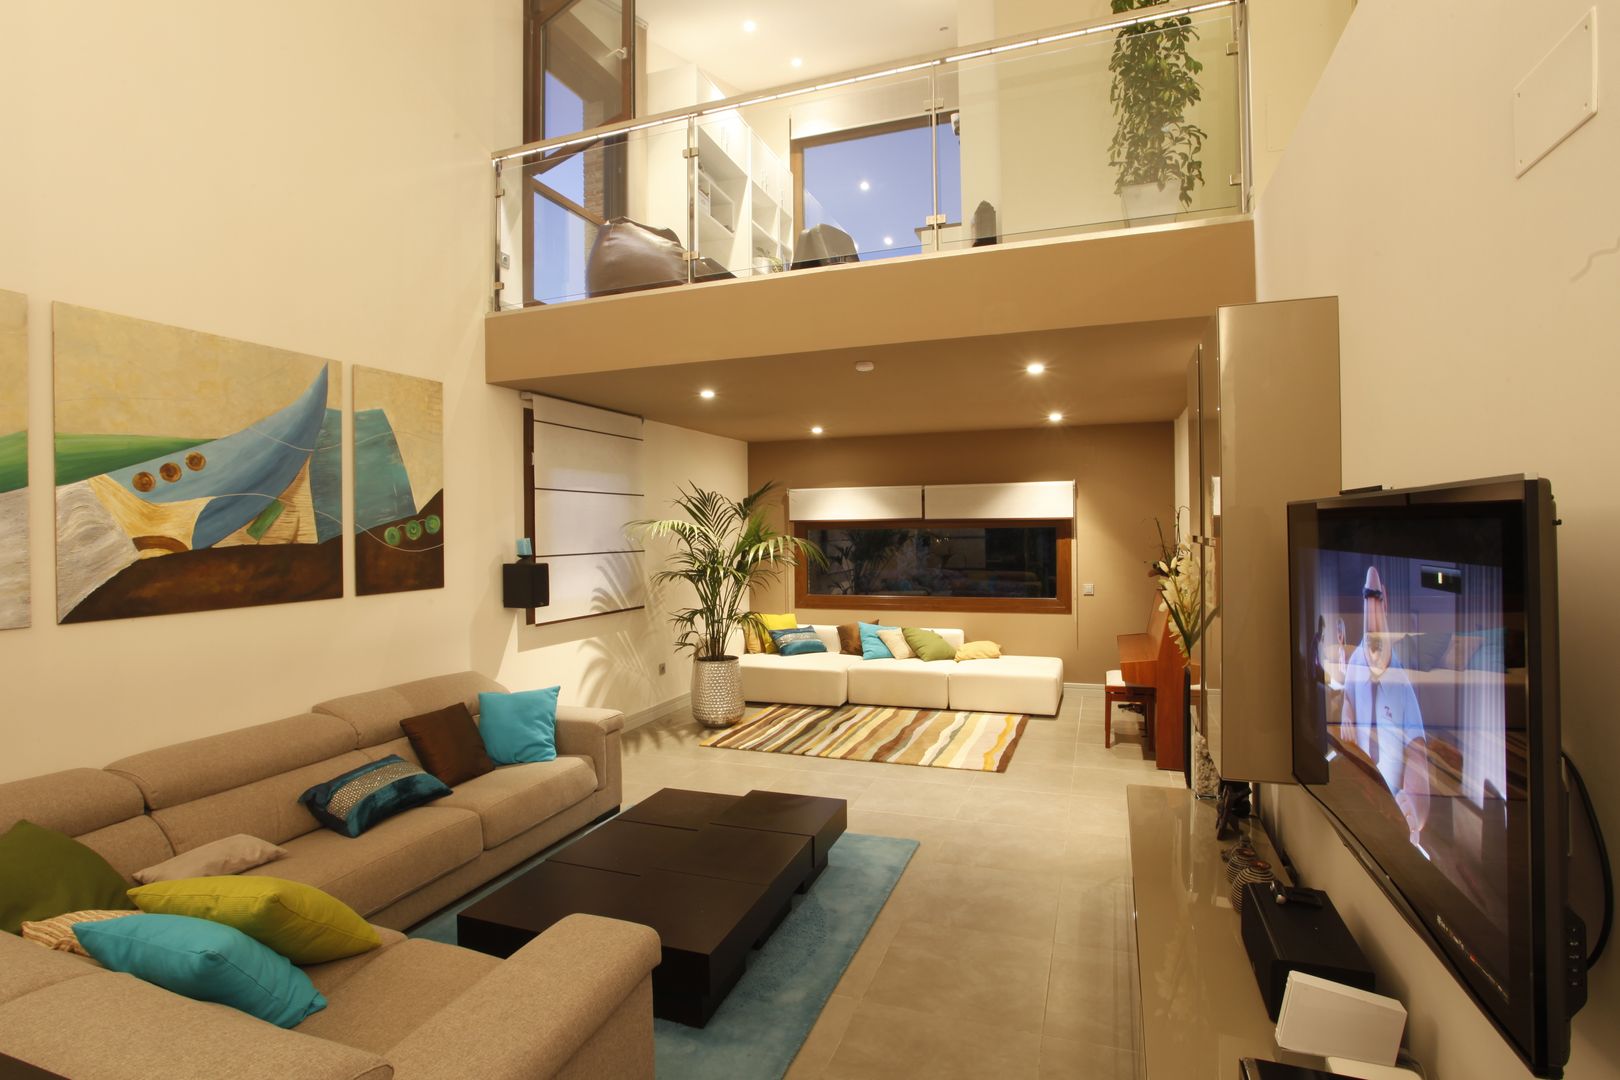 Sala de estar multimedia Domonova Soluciones Tecnológicas Salas multimedia de estilo moderno cine en casa,sala multimedia,sala de estar,sistema 5.1,domotica